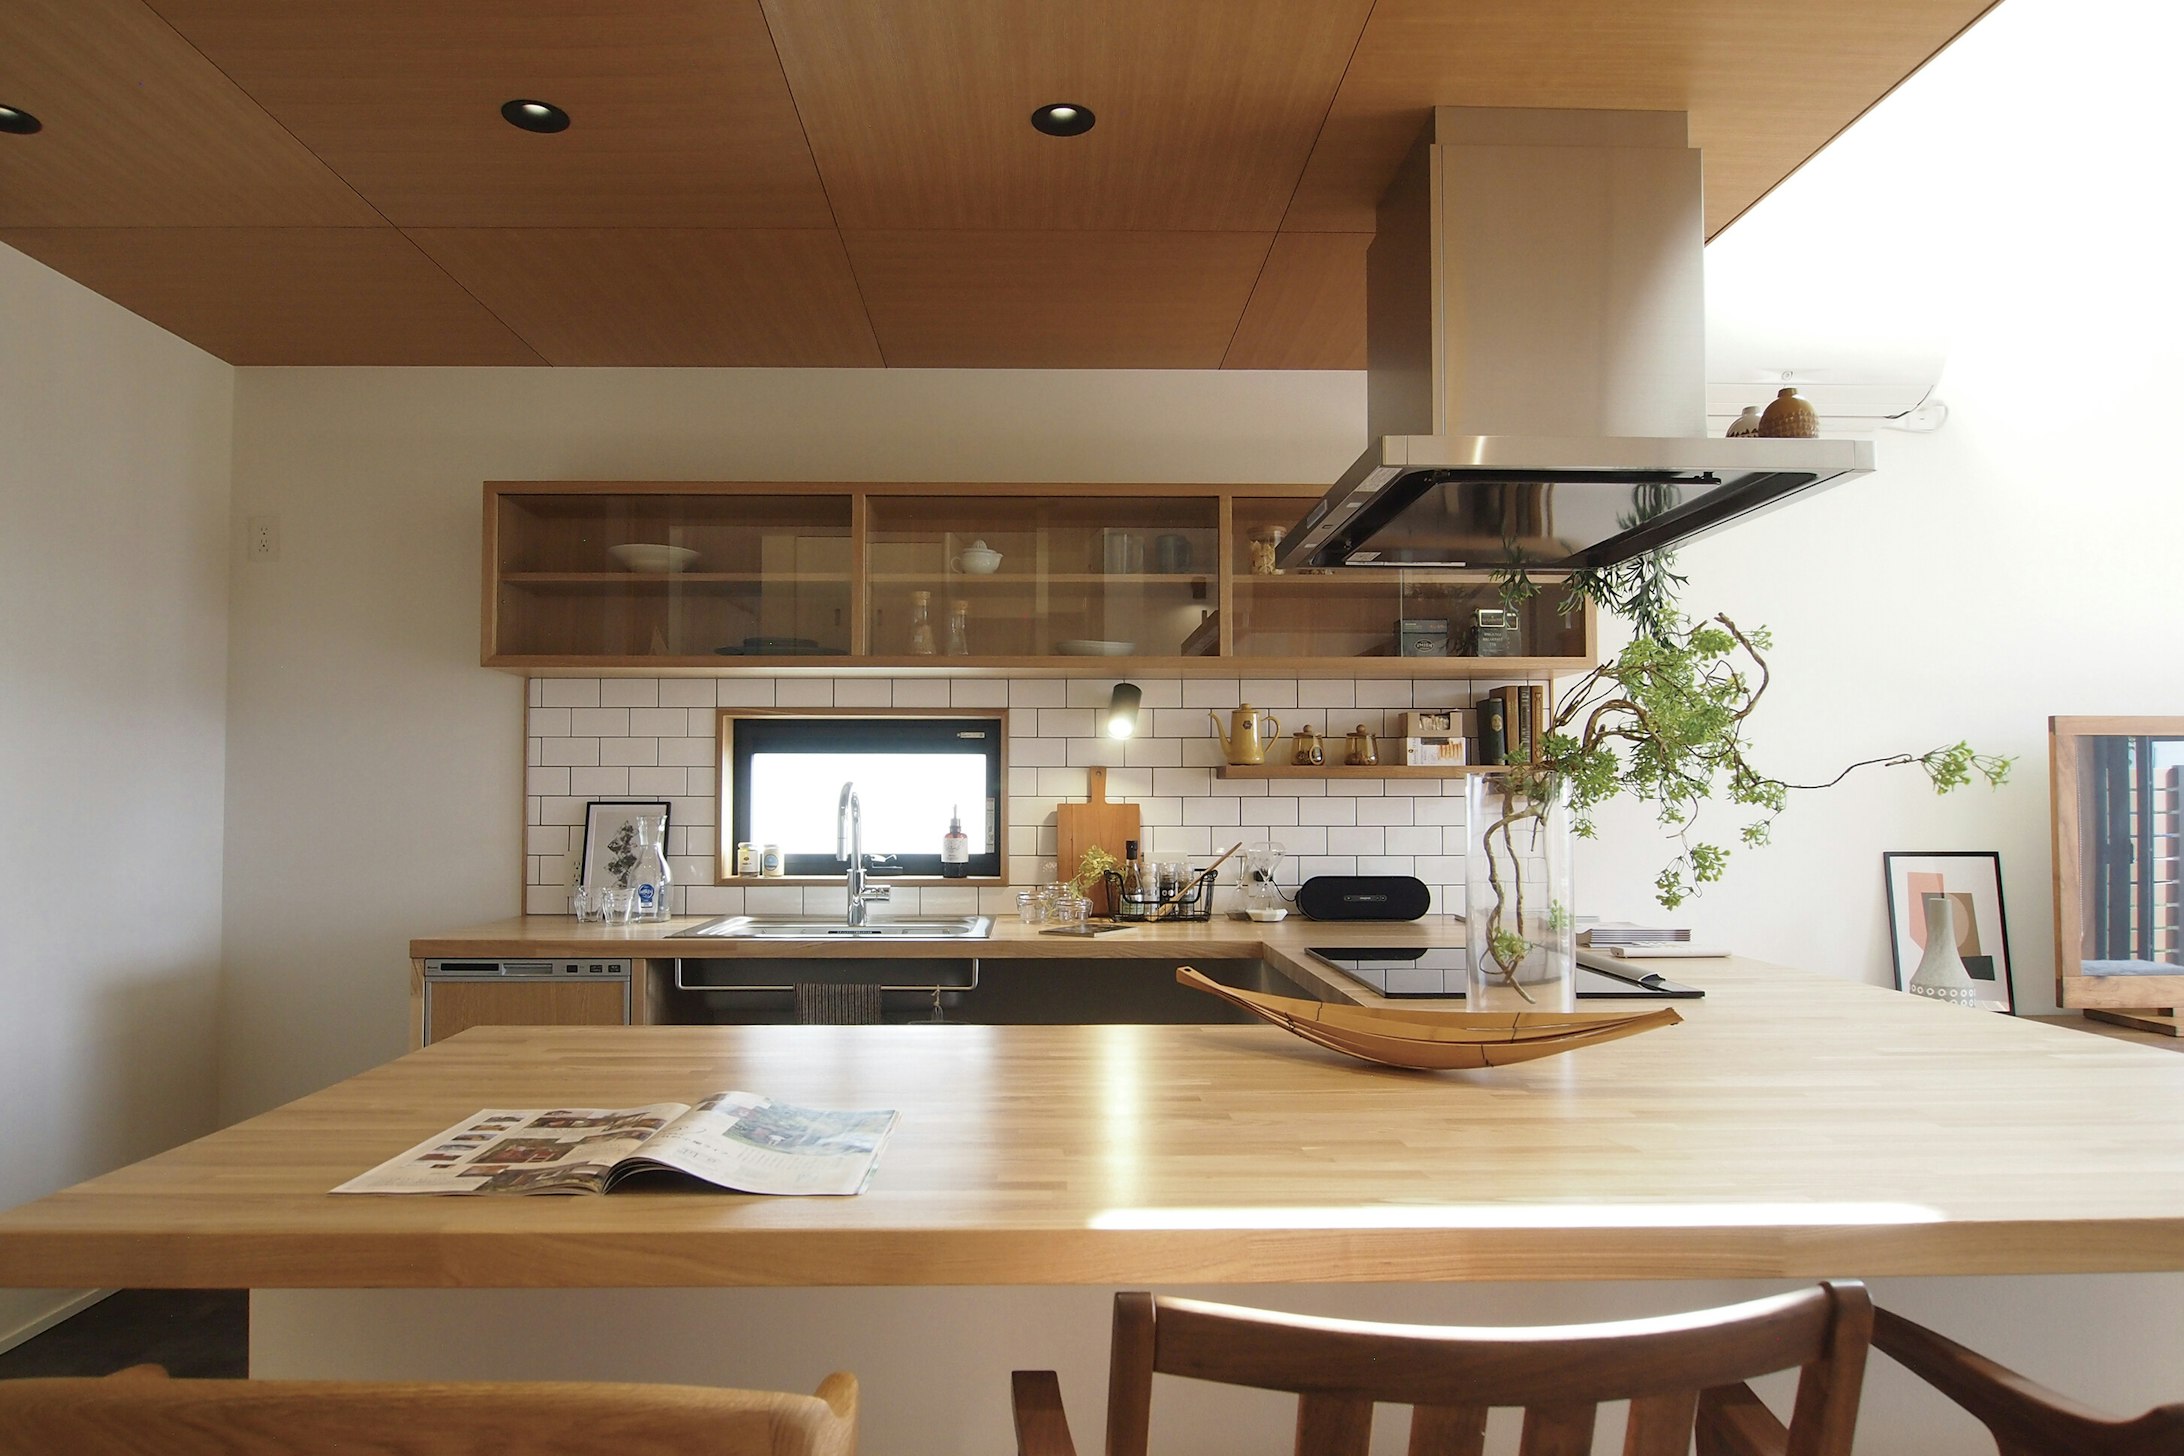  【石川】株式会社アーツデザイン_美的キッチンにシアタールーム。叶えたい空間をカタチに